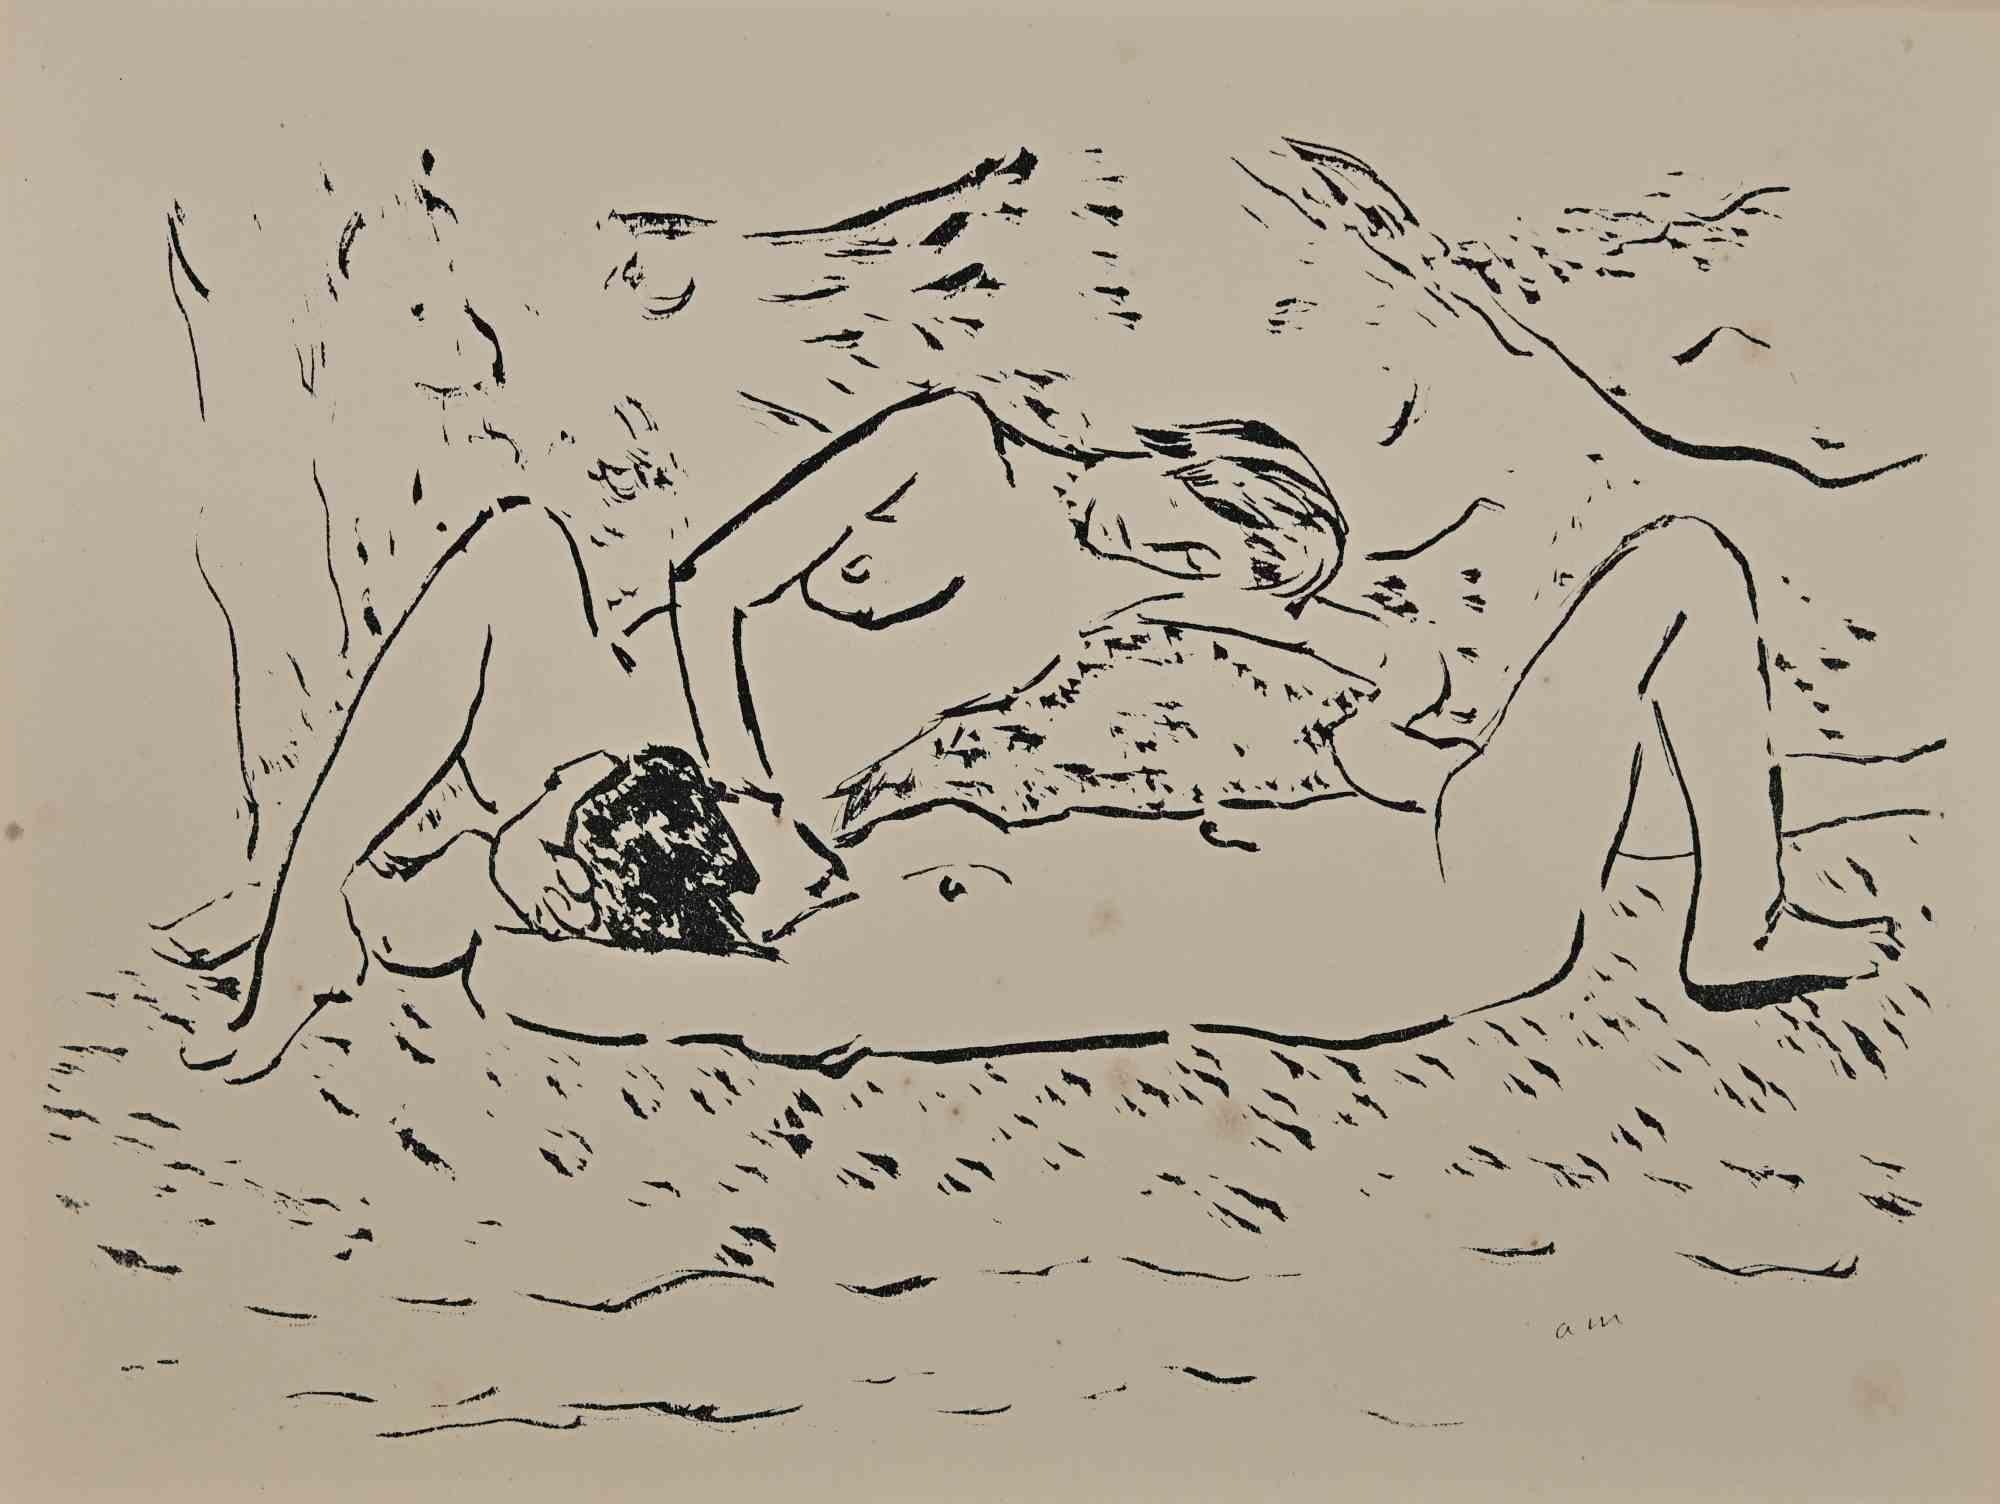 Erotic Scene ist eine wunderschöne Lithographie auf elfenbeinfarbenem Papier, die in den 1920er Jahren von Albert Marquet geschaffen wurde.  (Bordeaux, 1875 - Paris, 1947).

Monogrammiert auf der Platte am unteren Rand. Auf der Rückseite gestempelt